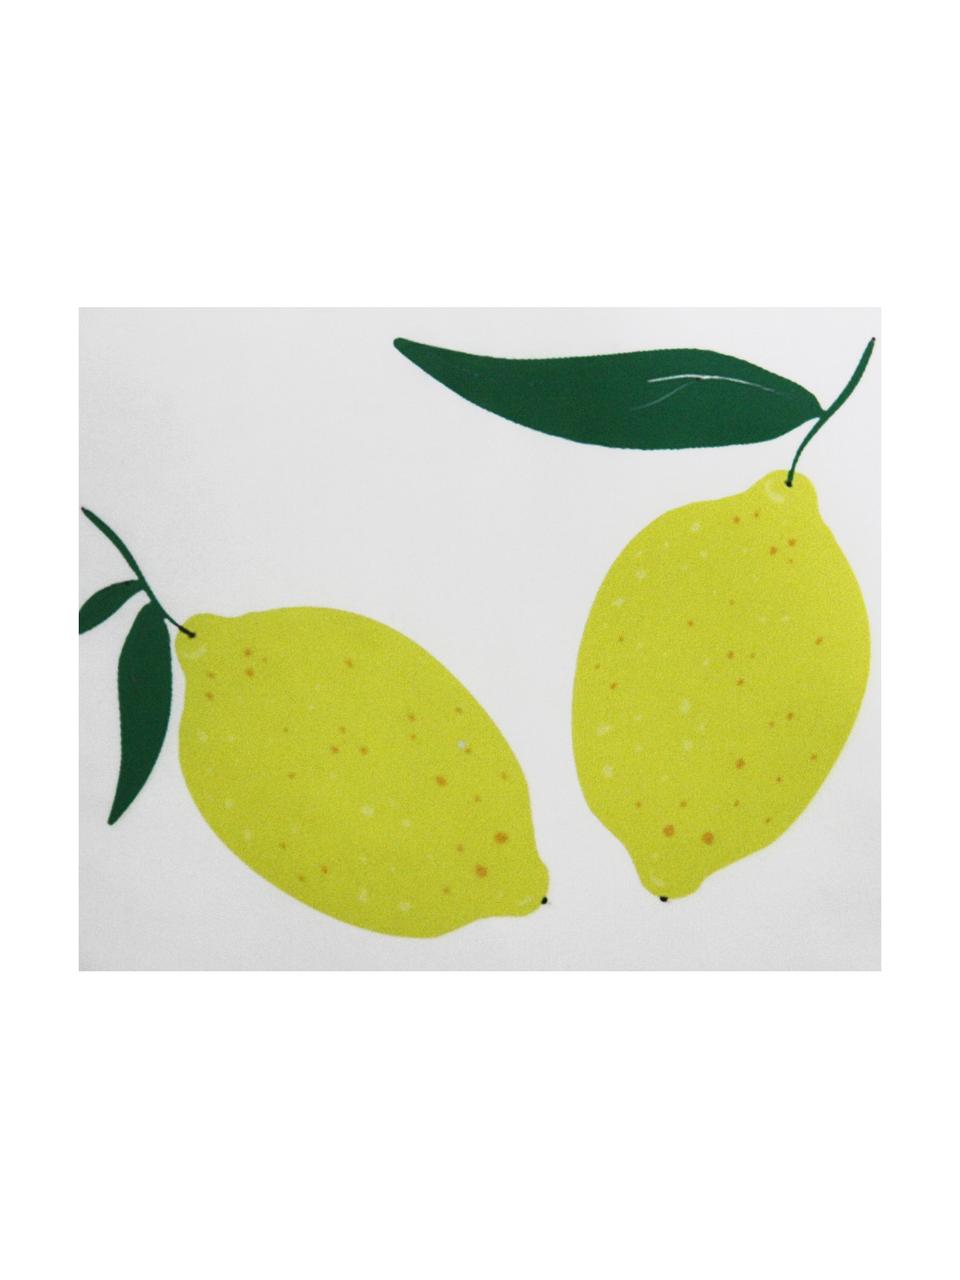 Kissenhülle Lemon mit Zitronen, 100% Polyester, Weiß, Gelb, Grün, 45 x 45 cm